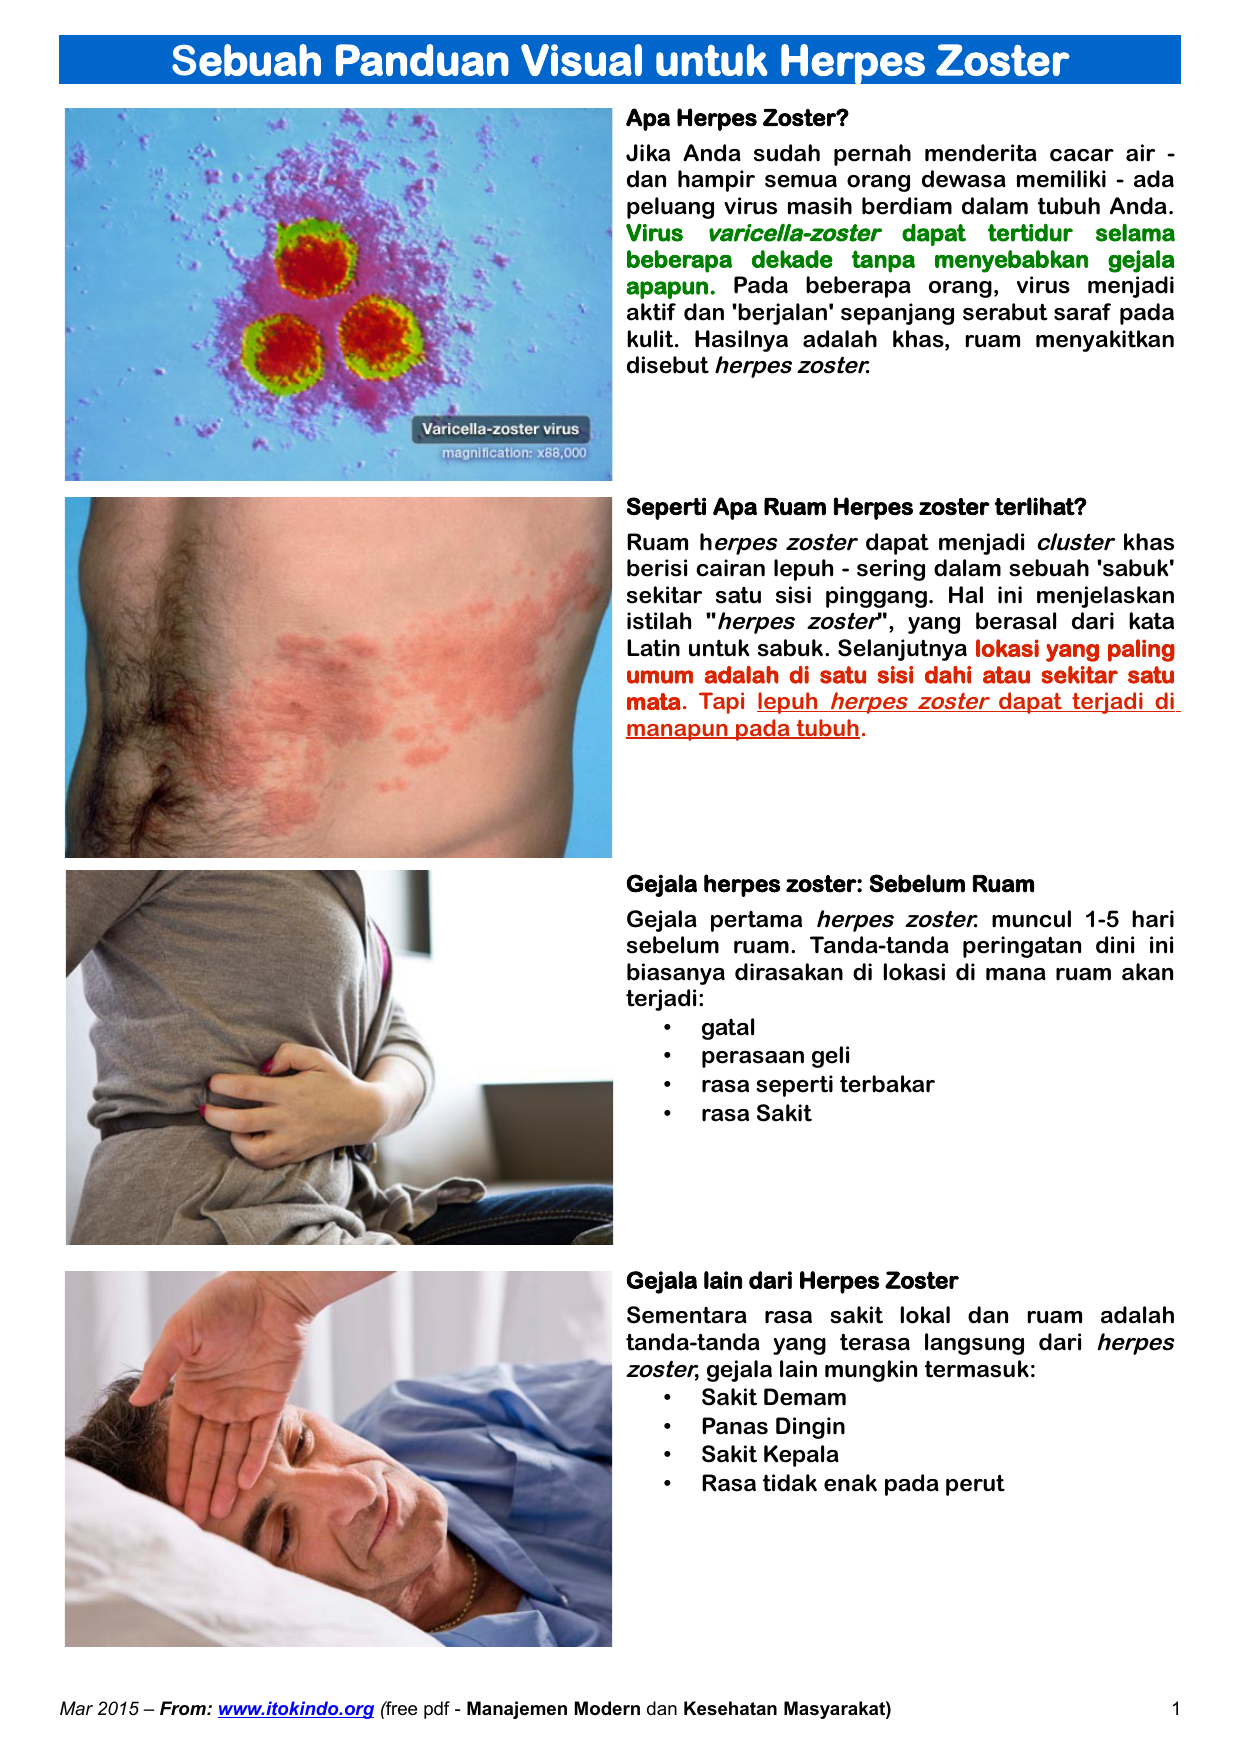 Virus varicella zoster adalah virus yang menyebabkan penyakit